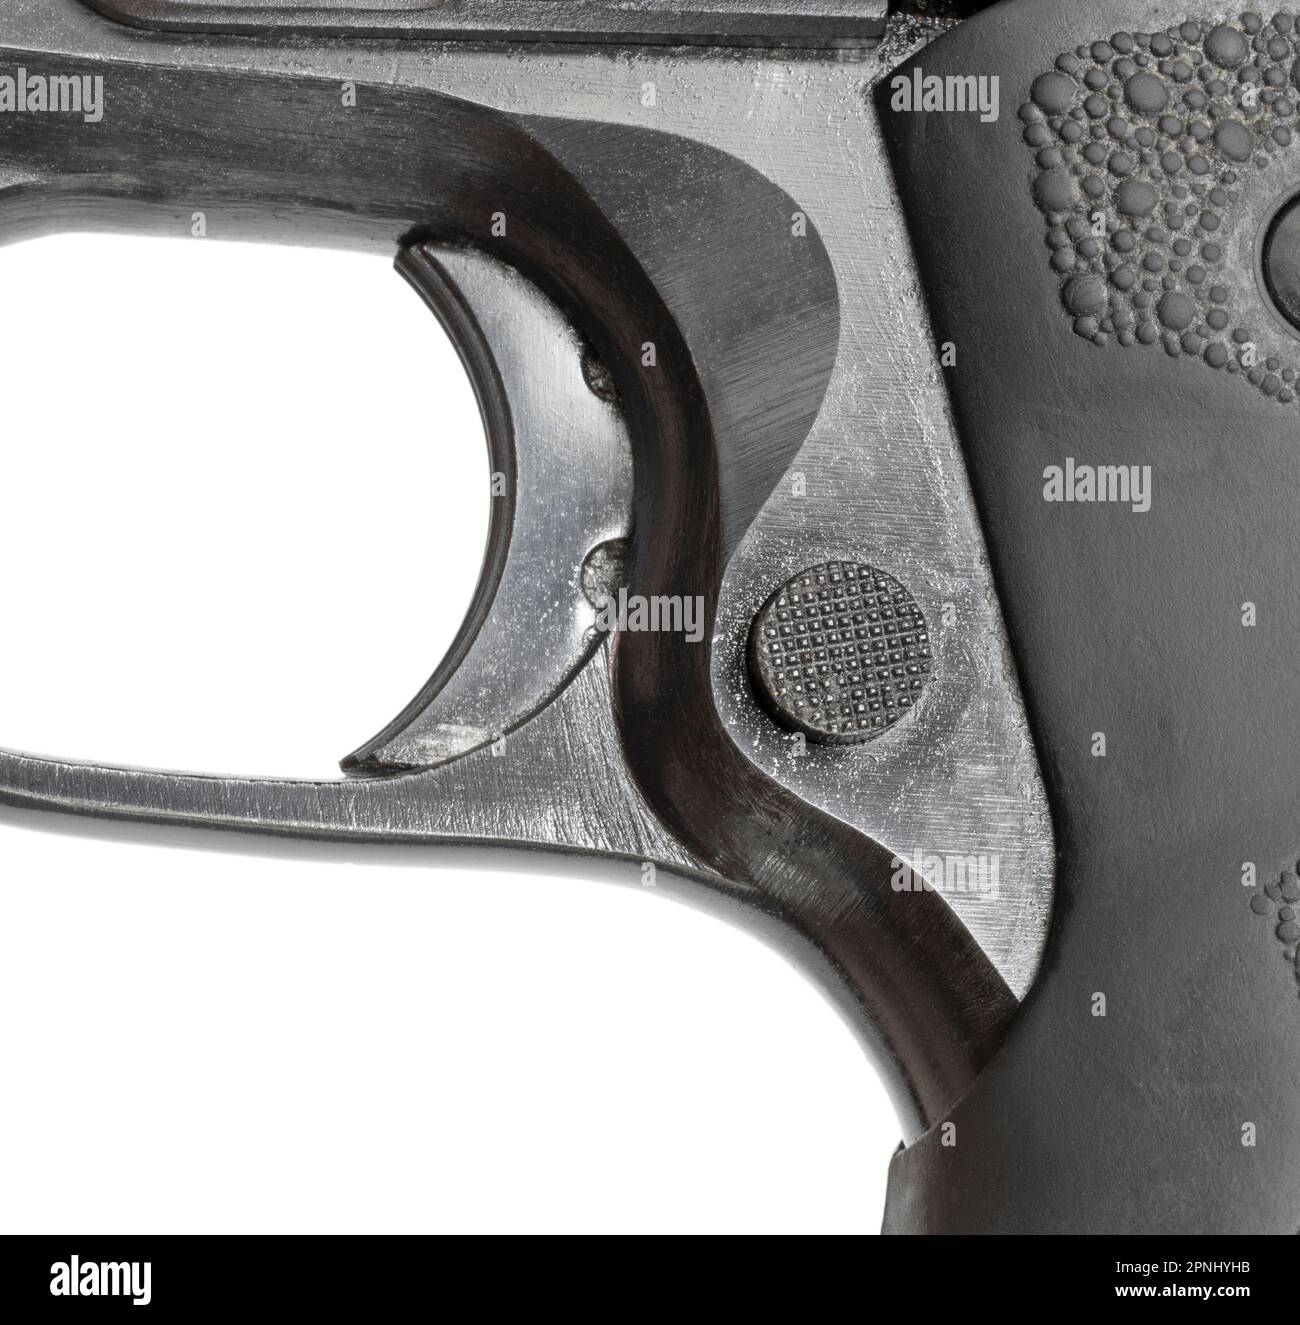 Sortie de magazine et triggerr sur un pistolet semi-automatique isolé dans un studio de tir Banque D'Images